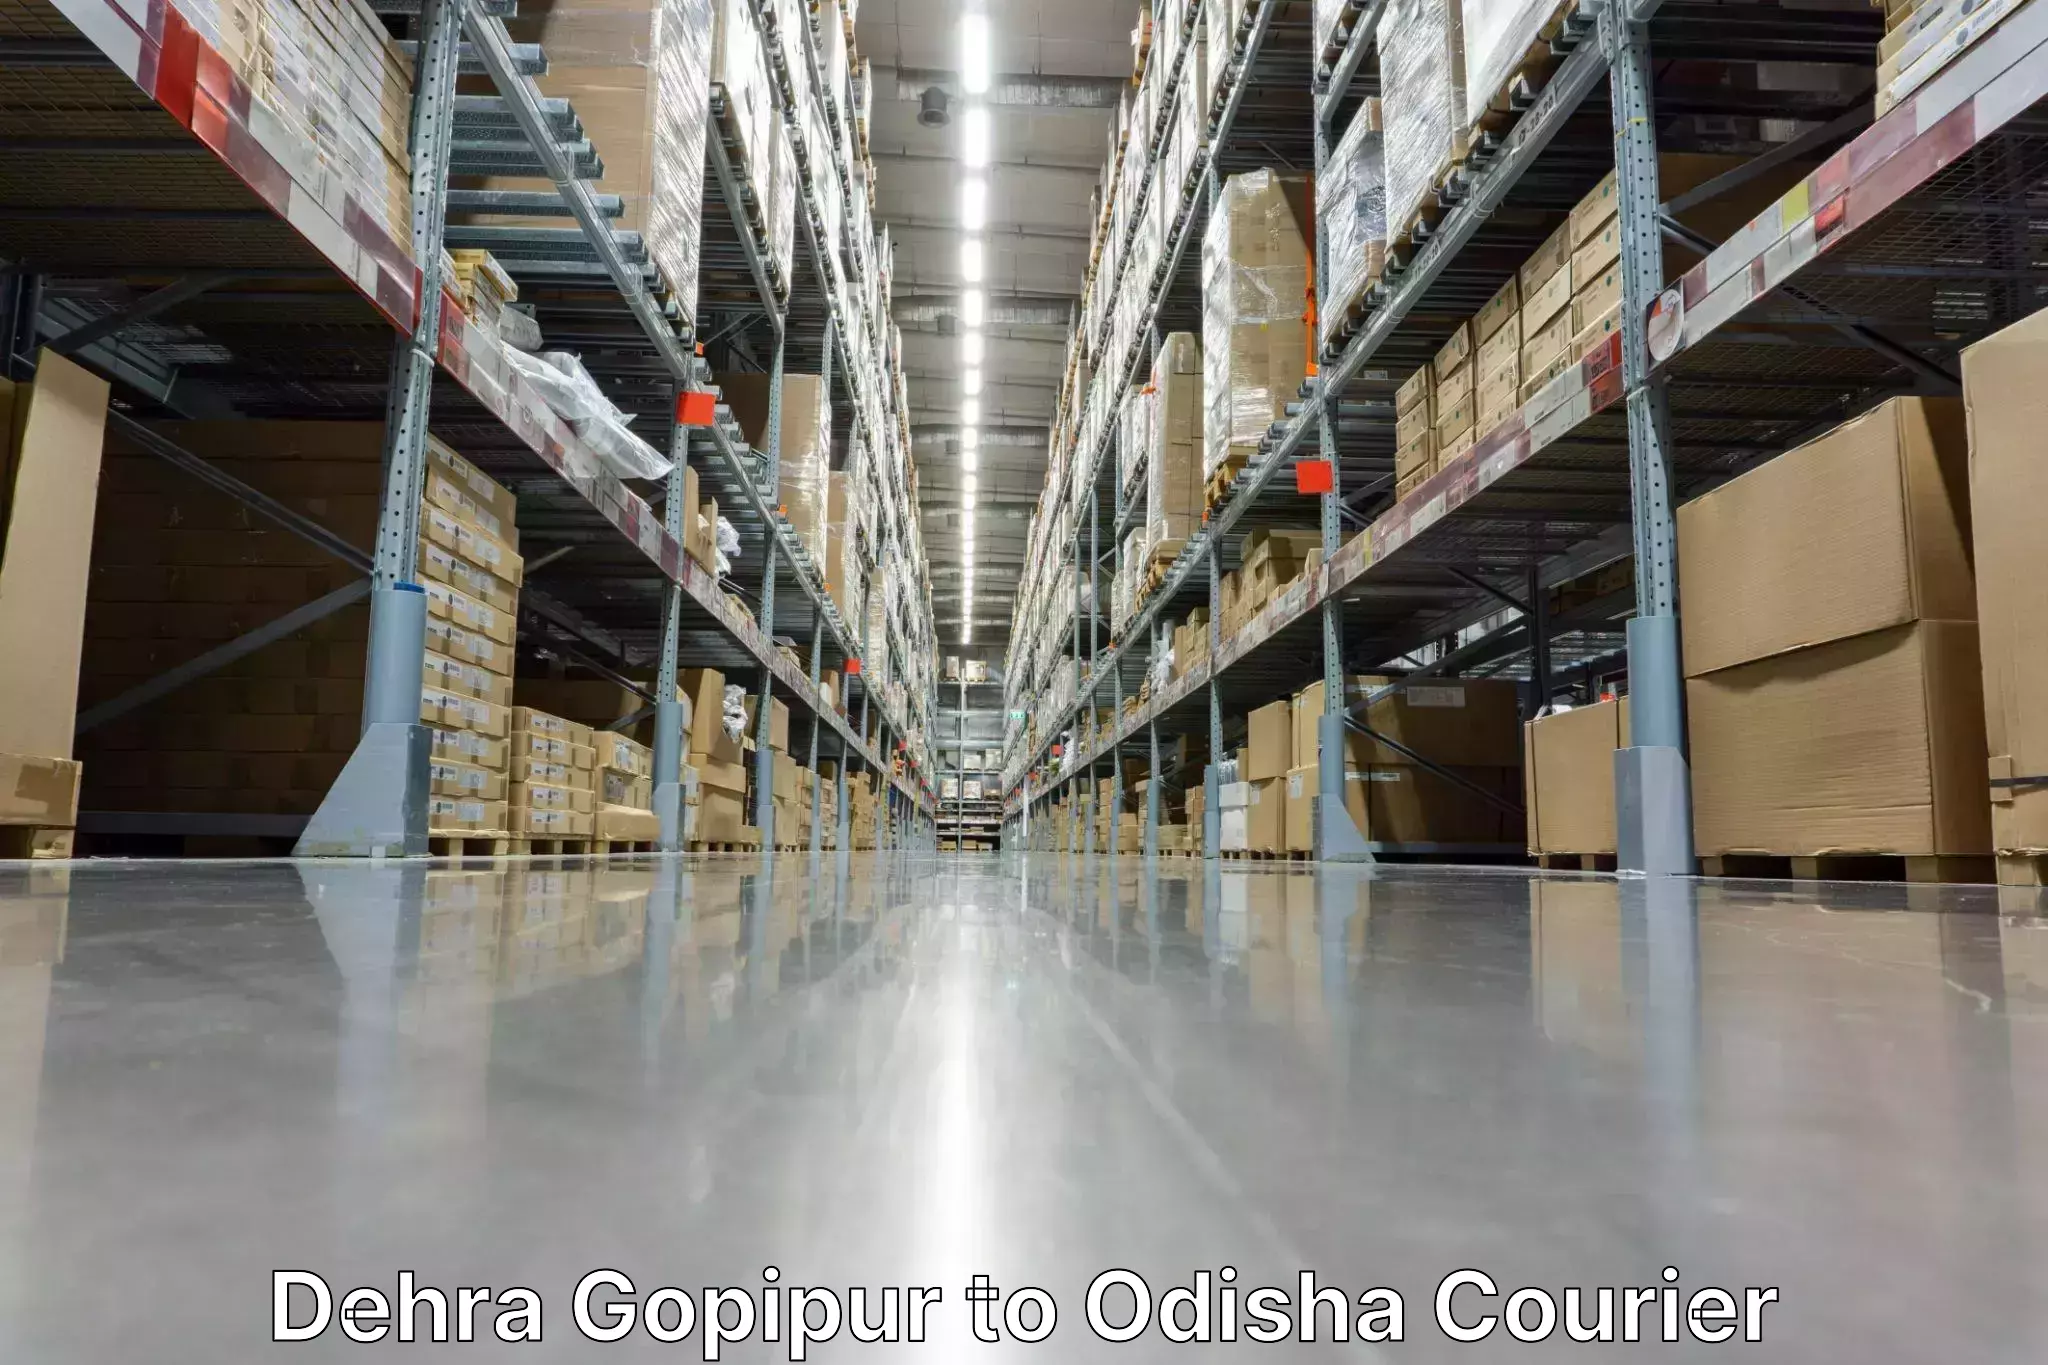 Premium courier solutions Dehra Gopipur to Morada